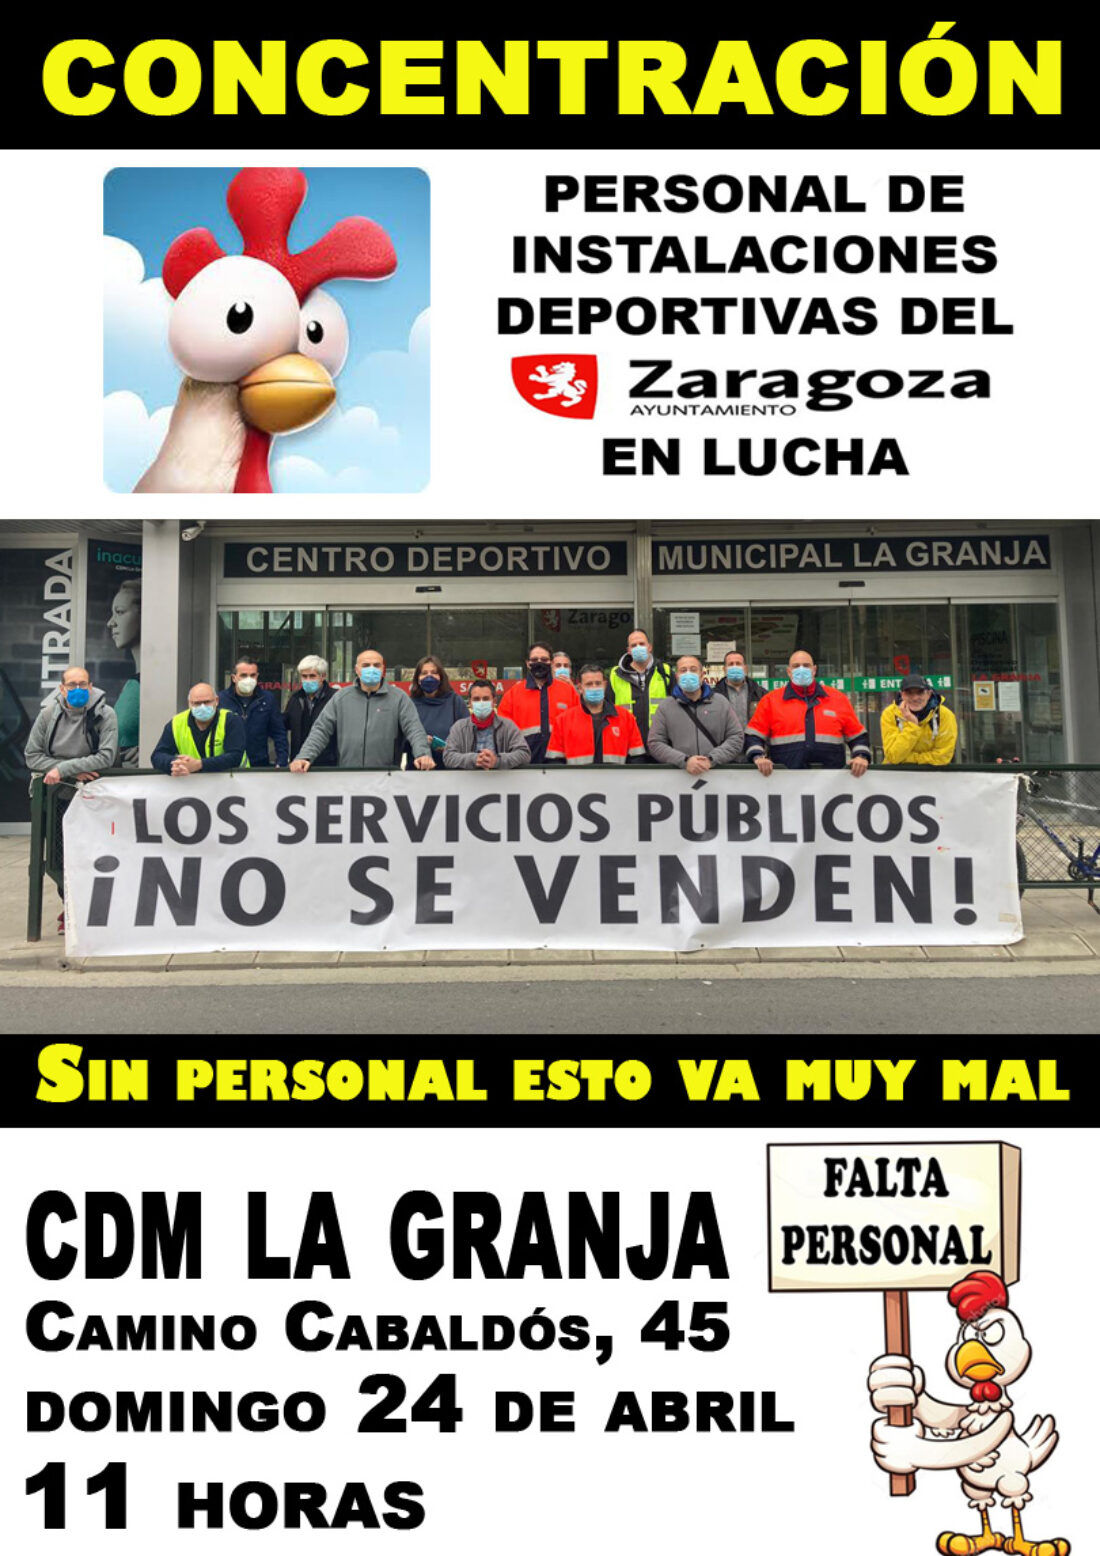 Continúa la huelga de deportes del Ayuntamiento de Zaragoza